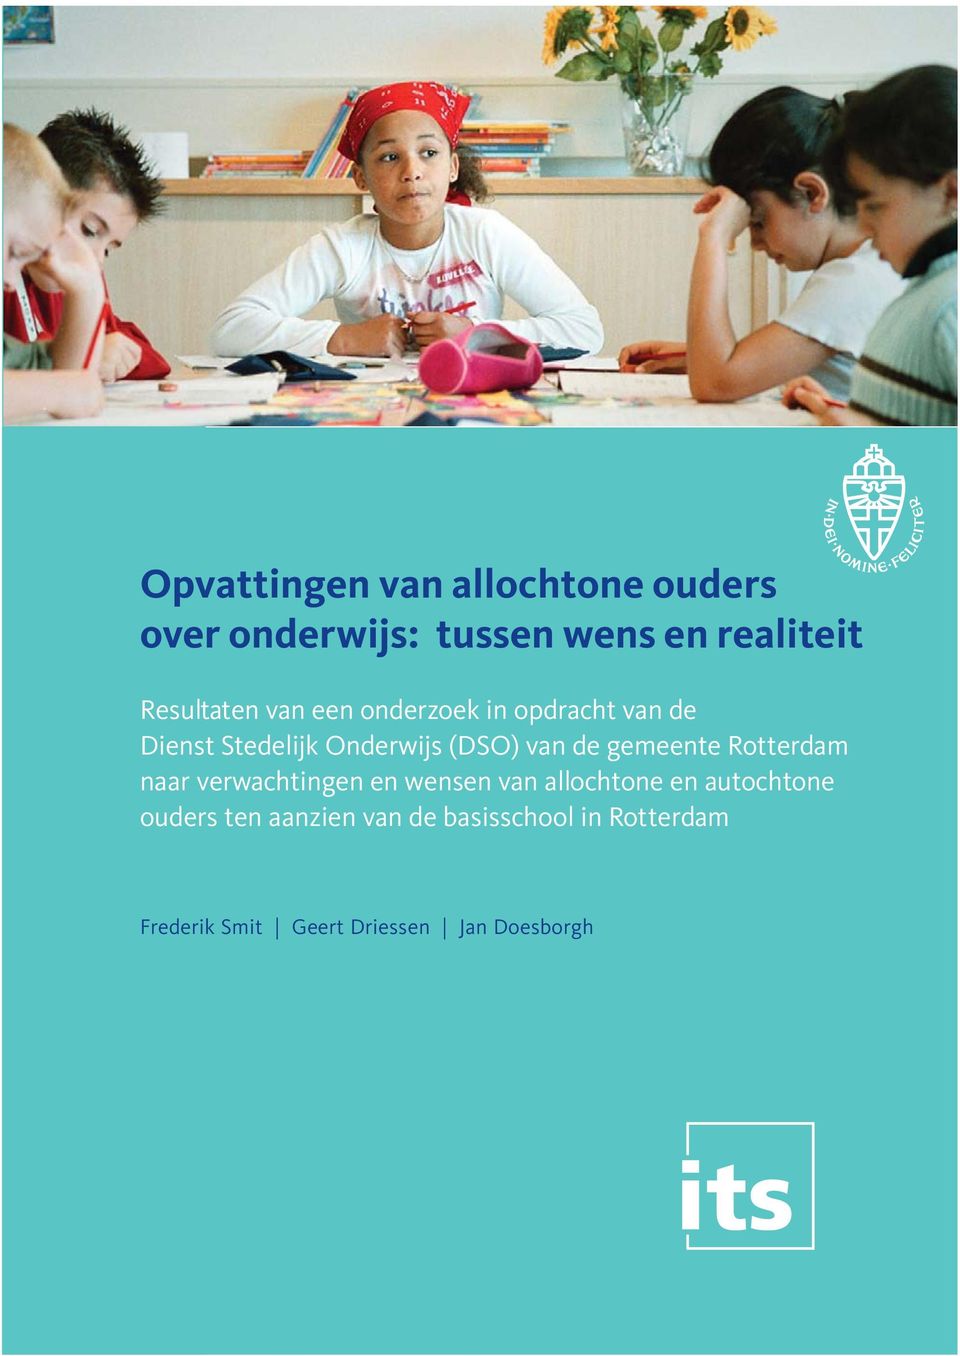 Stedelijk Onderwijs (DSO) van de gemeente Rotterdam naar verwachtingen en wensen van allochtone